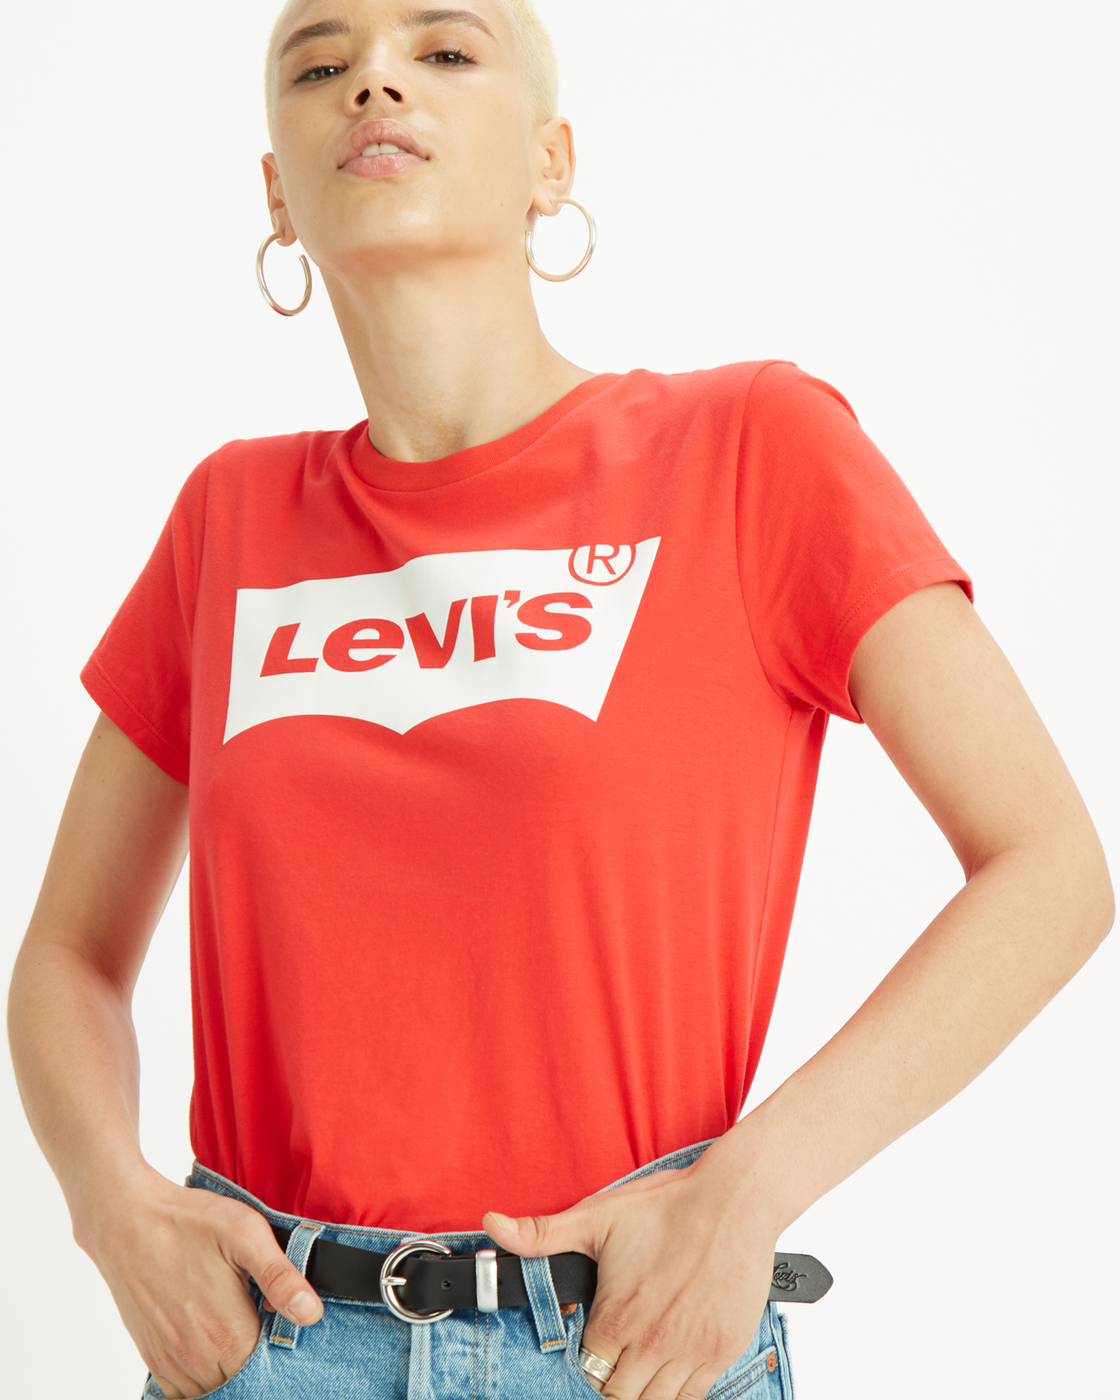 Купить футболку levis. Майка левайс. Левайс футболка женская красная. Levi's футболка. Майка левайс красная.